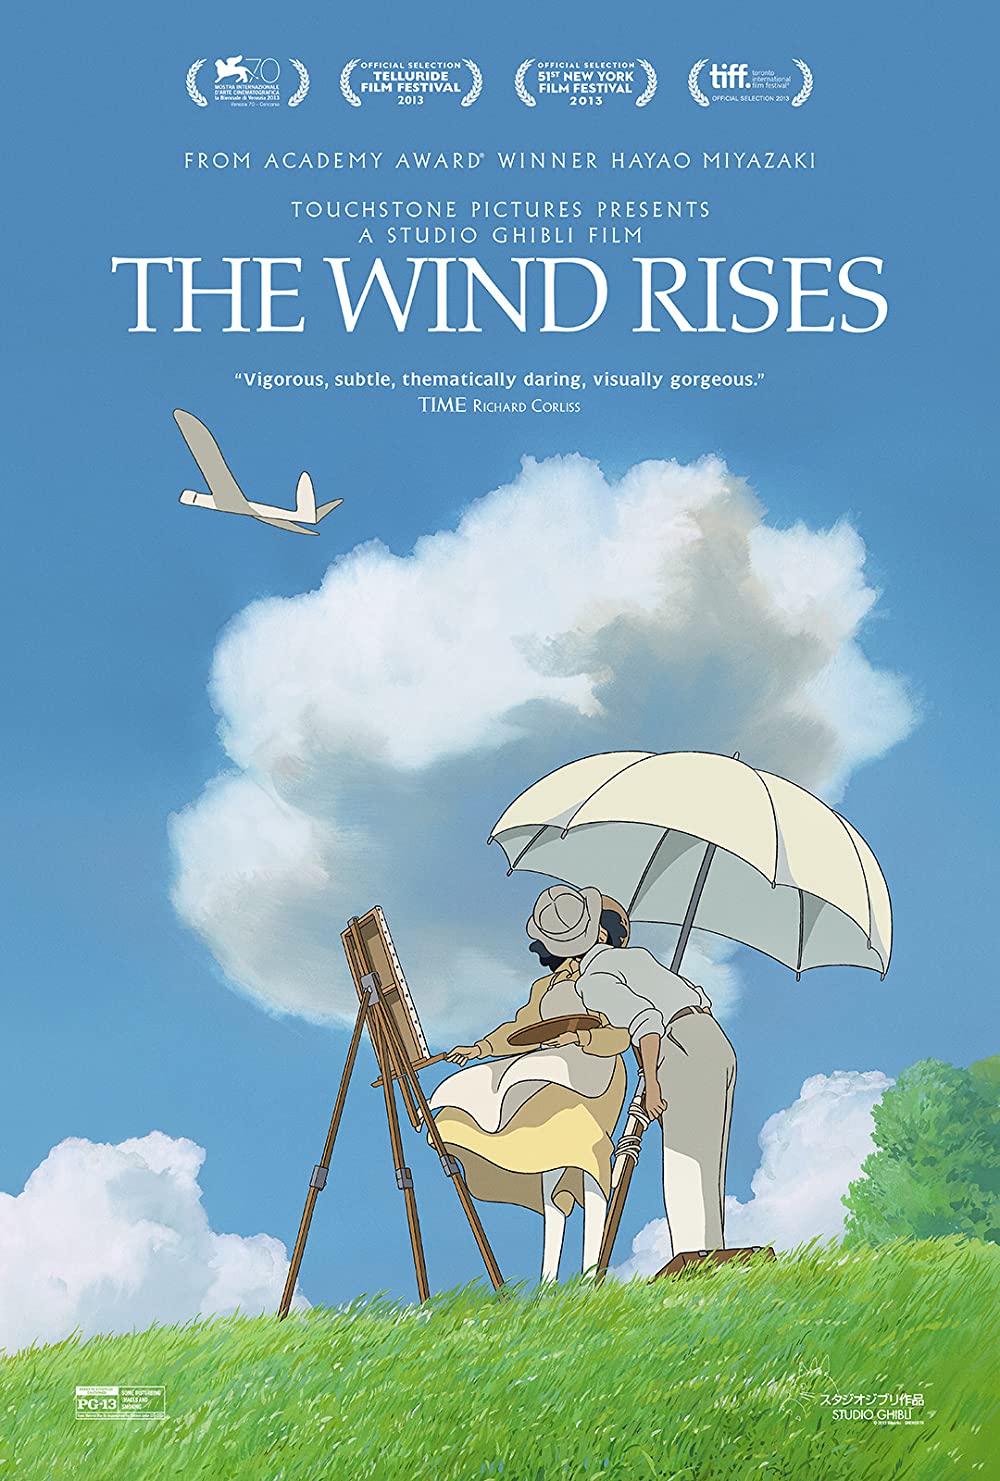 The Wind Rises ปีกแห่งฝัน วันแห่งรัก (2013)